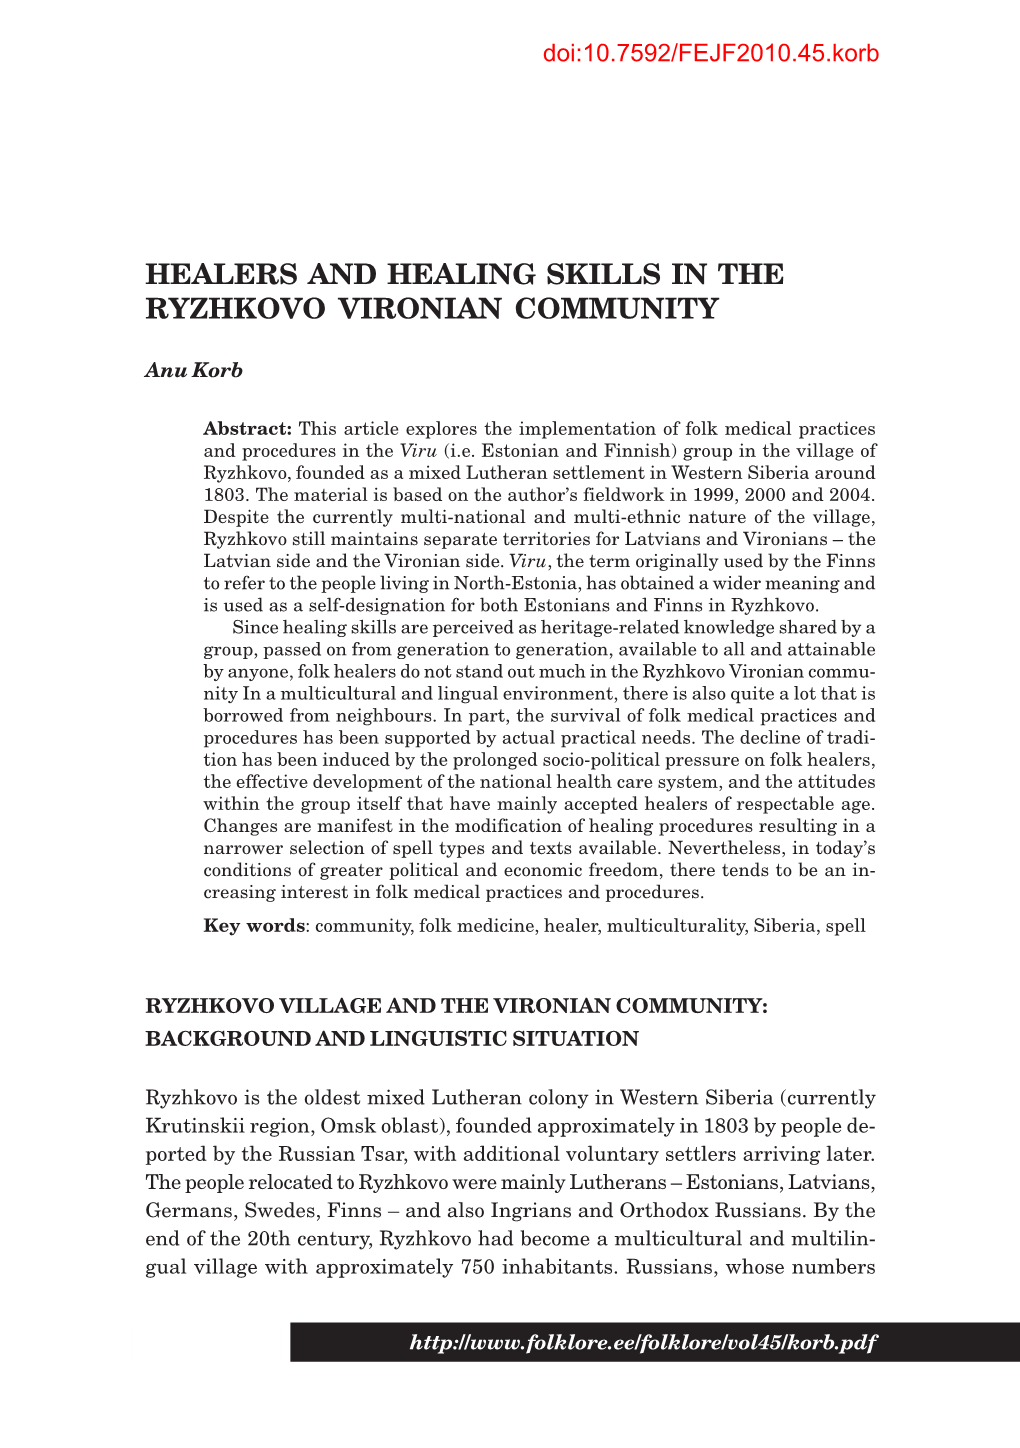 Healers and Healing Skills in the Ryzhkovo Vironian Community